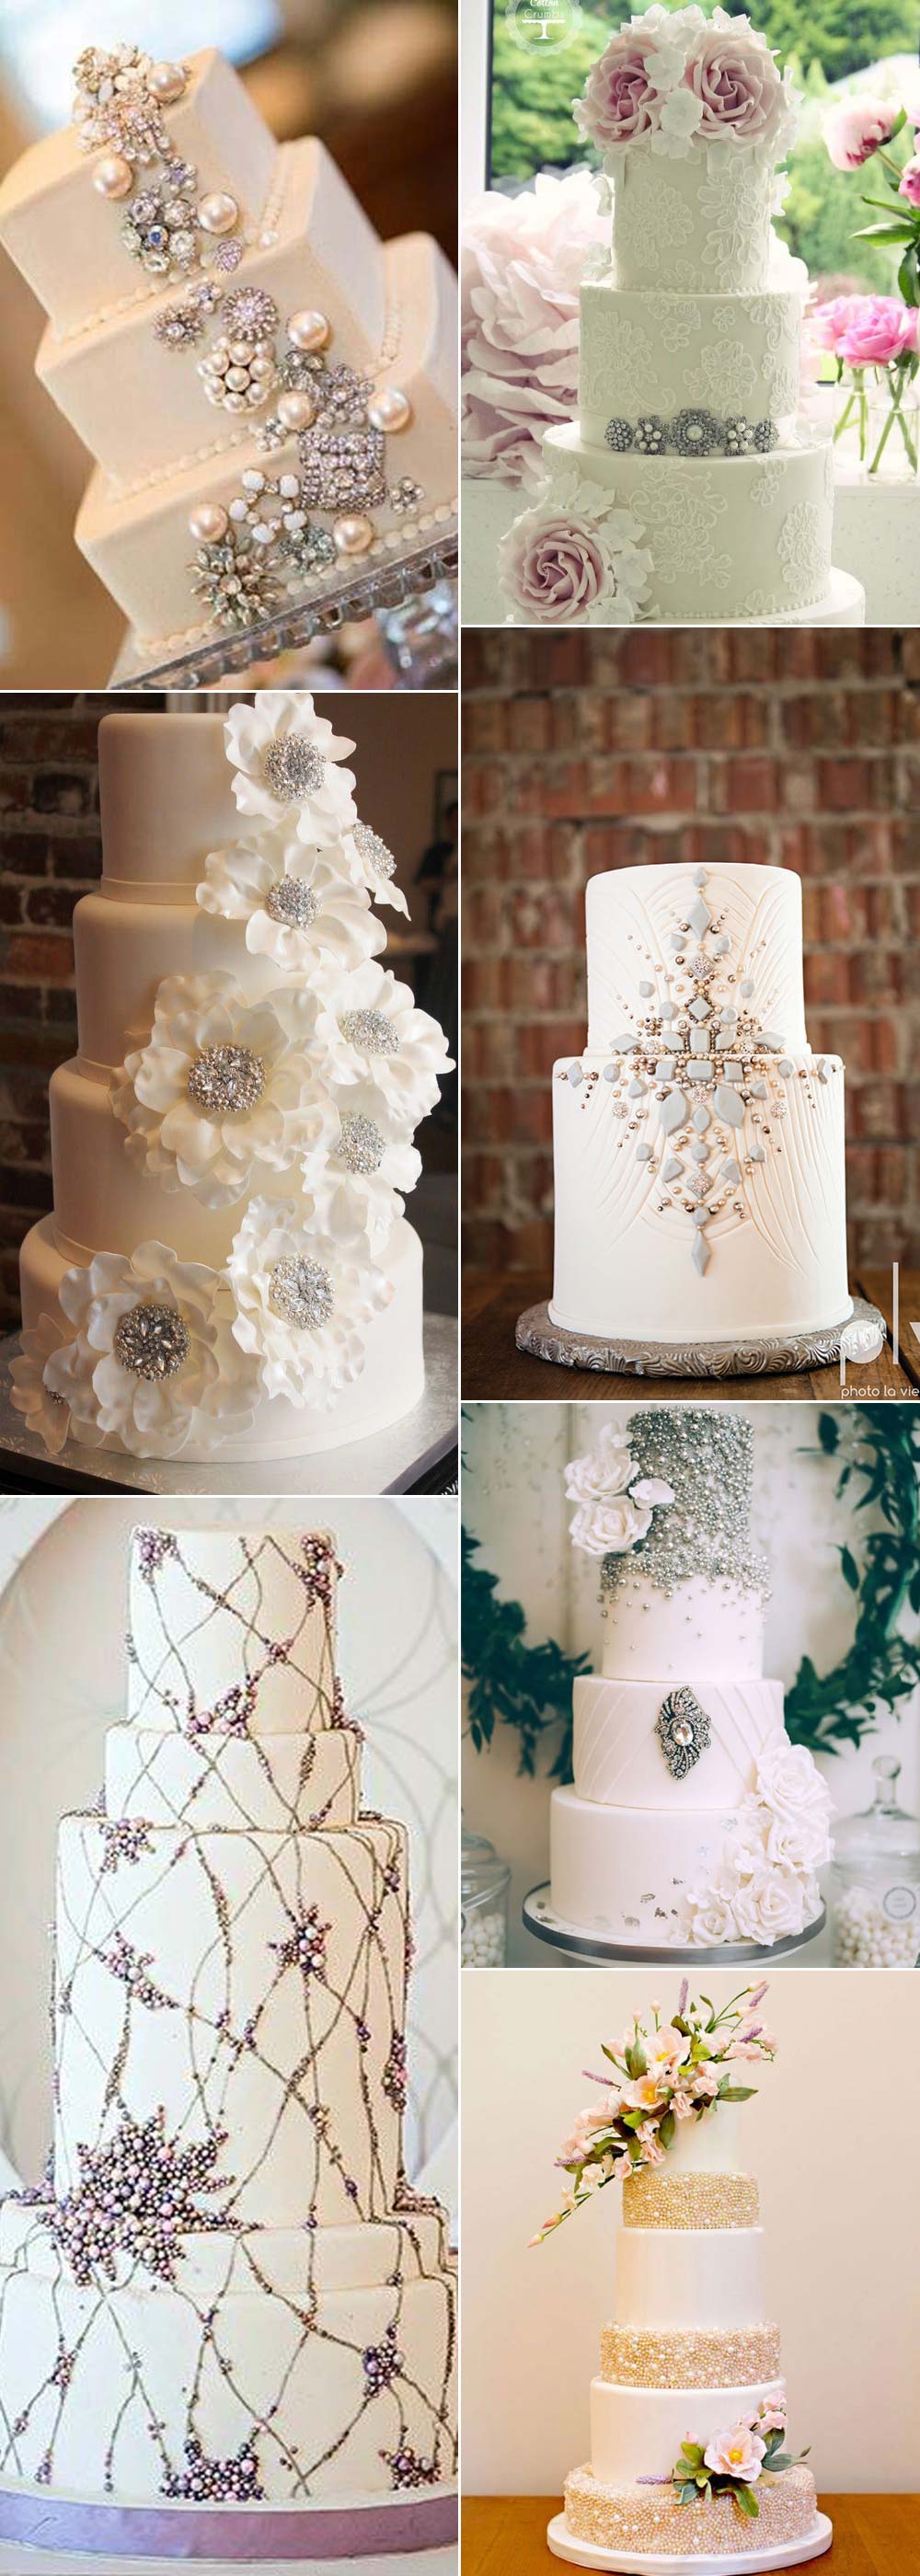 Wedding cakes with jewellery